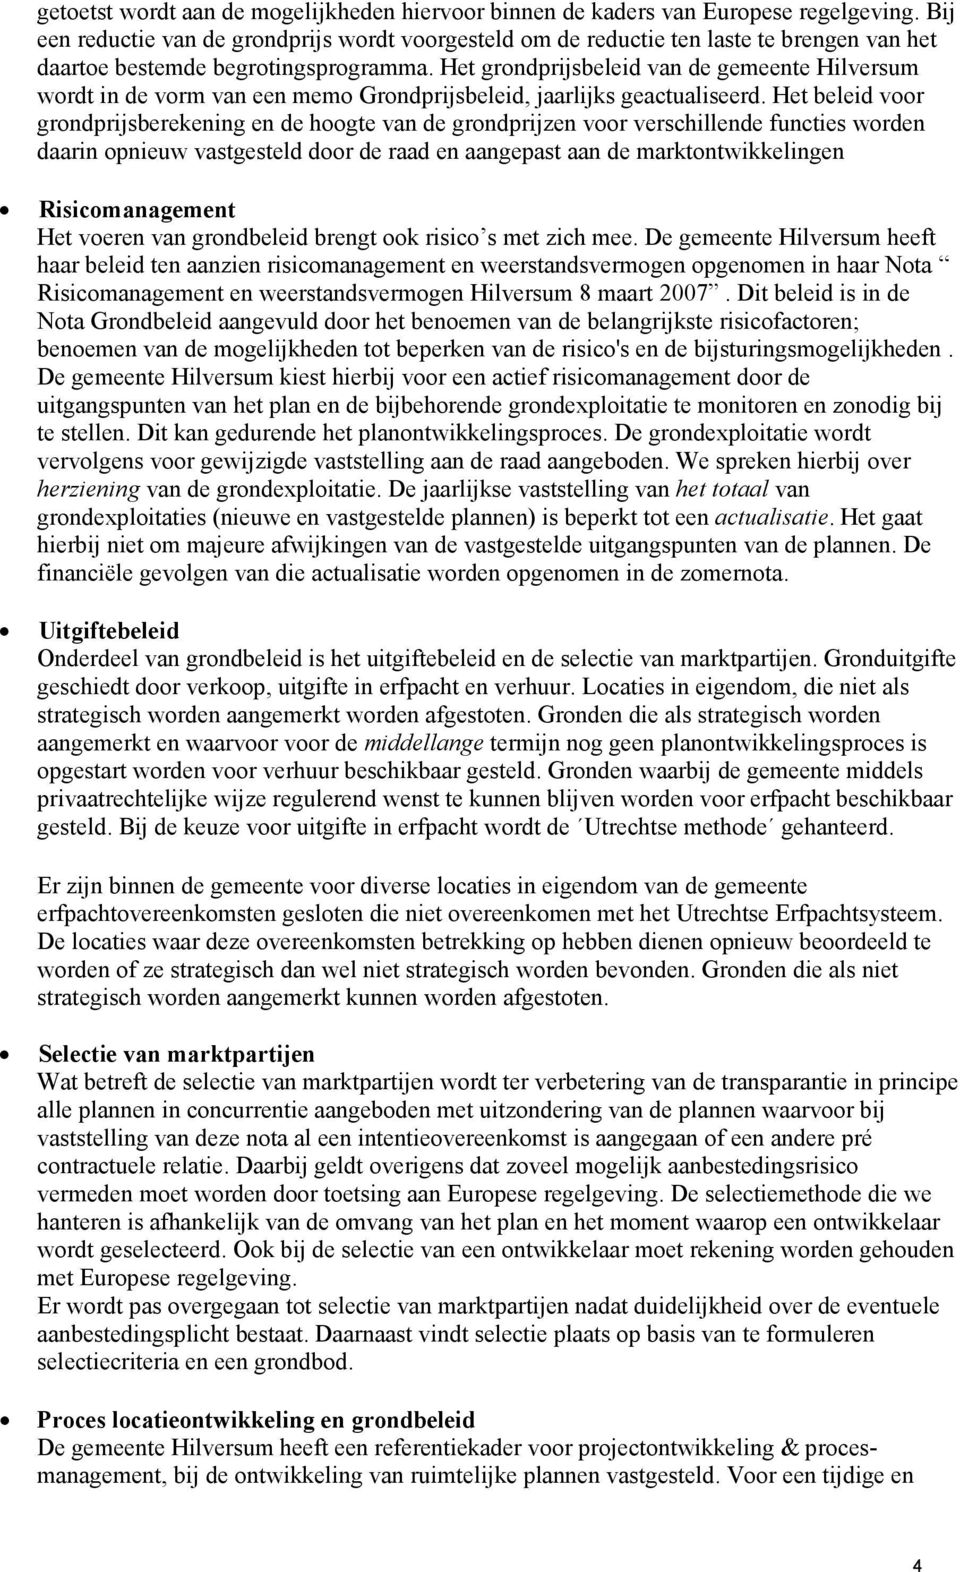 Het grondprijsbeleid van de gemeente Hilversum wordt in de vorm van een memo Grondprijsbeleid, jaarlijks geactualiseerd.